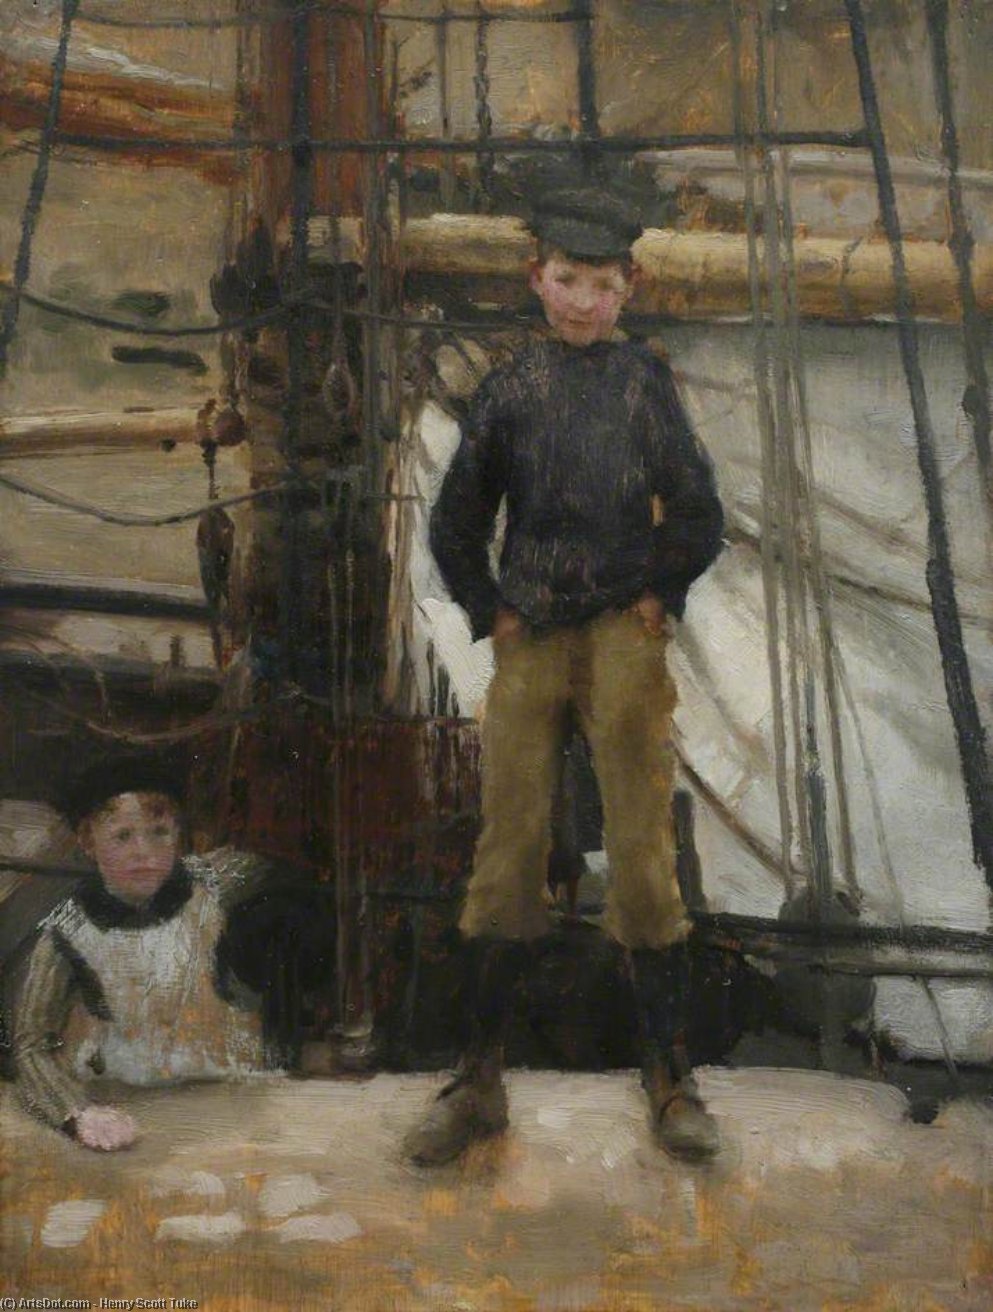 WikiOO.org - אנציקלופדיה לאמנויות יפות - ציור, יצירות אמנות Henry Scott Tuke - Two Children on Deck